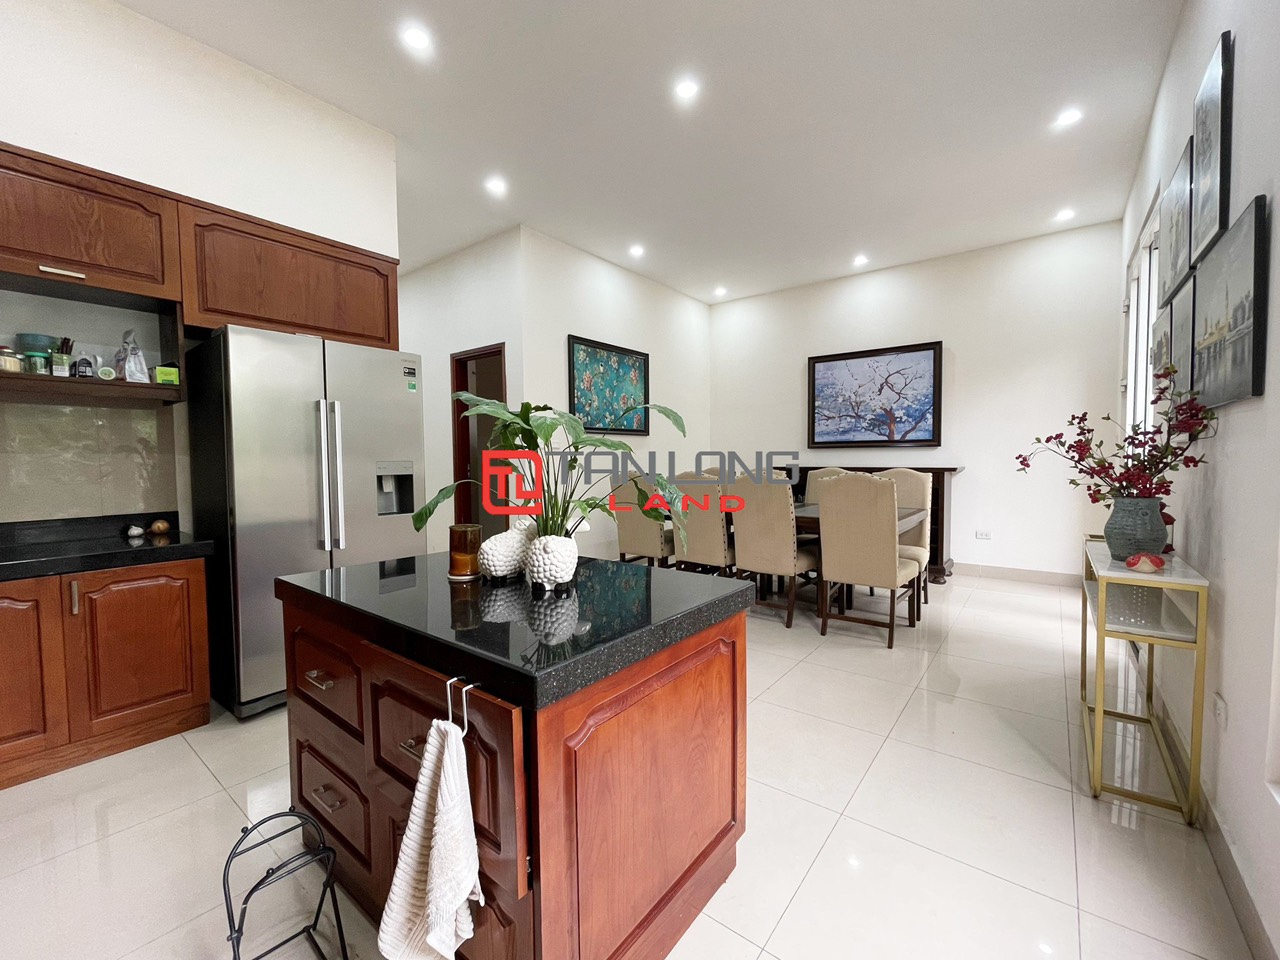 5 Bedrooms Duplex Villa for Rent with Reasonable Price in Vinhomes Riverside Long Bien 4